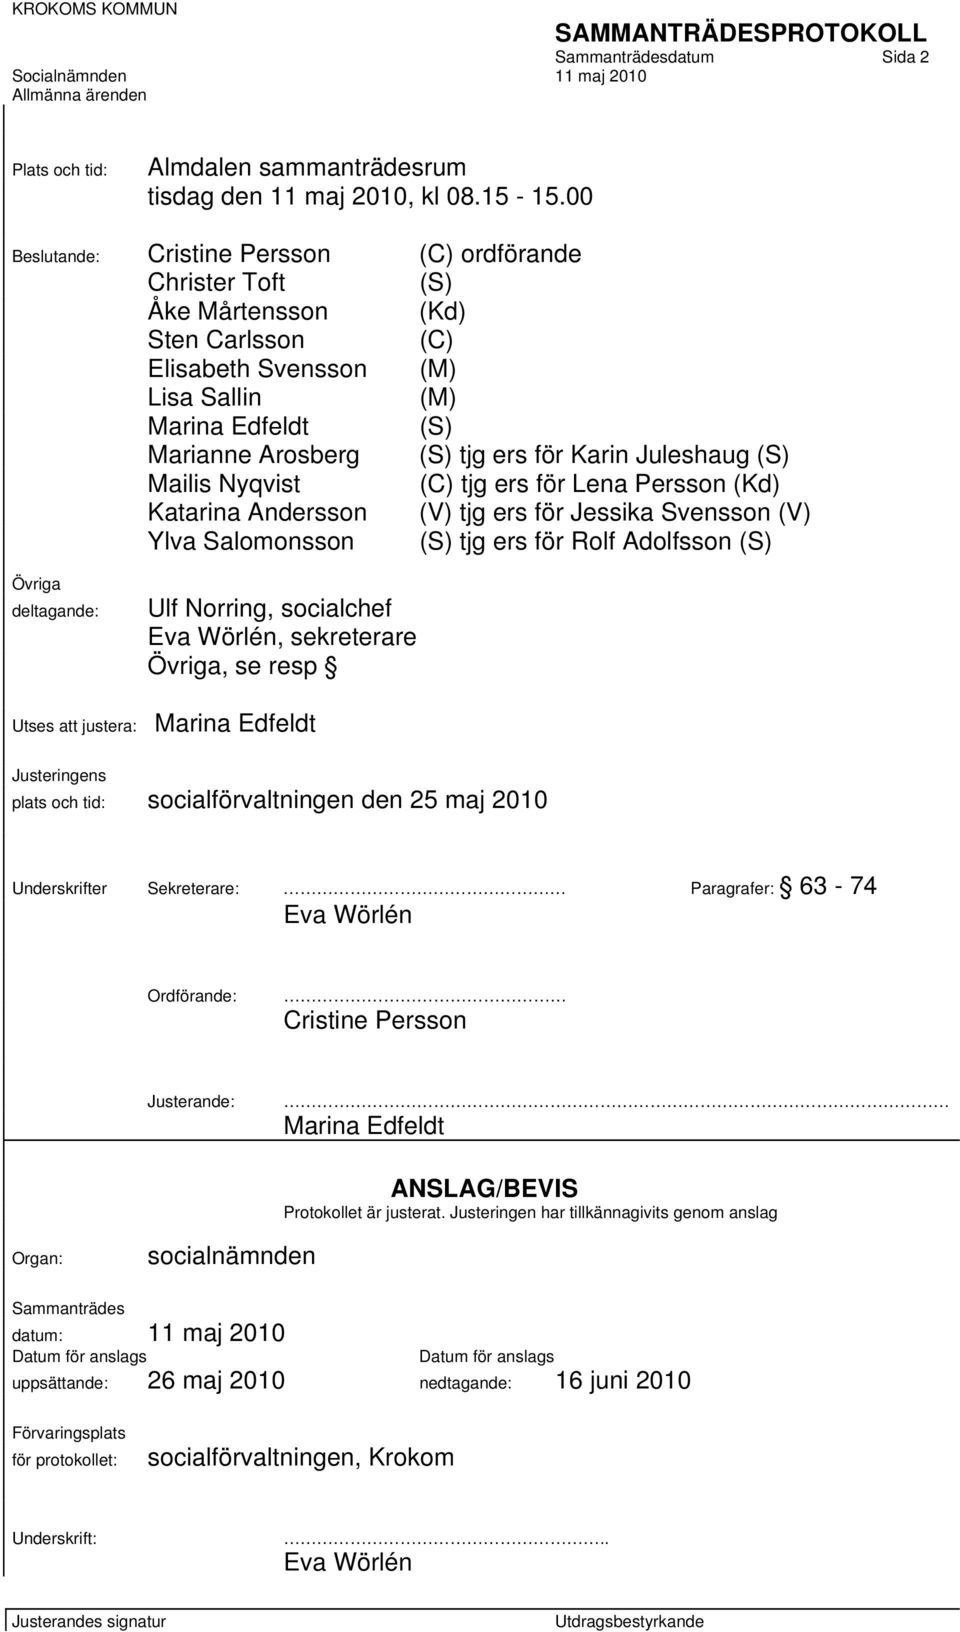 Karin Juleshaug (S) Mailis Nyqvist (C) tjg ers för Lena Persson (Kd) Katarina Andersson (V) tjg ers för Jessika Svensson (V) Ylva Salomonsson (S) tjg ers för Rolf Adolfsson (S) Övriga deltagande: Ulf